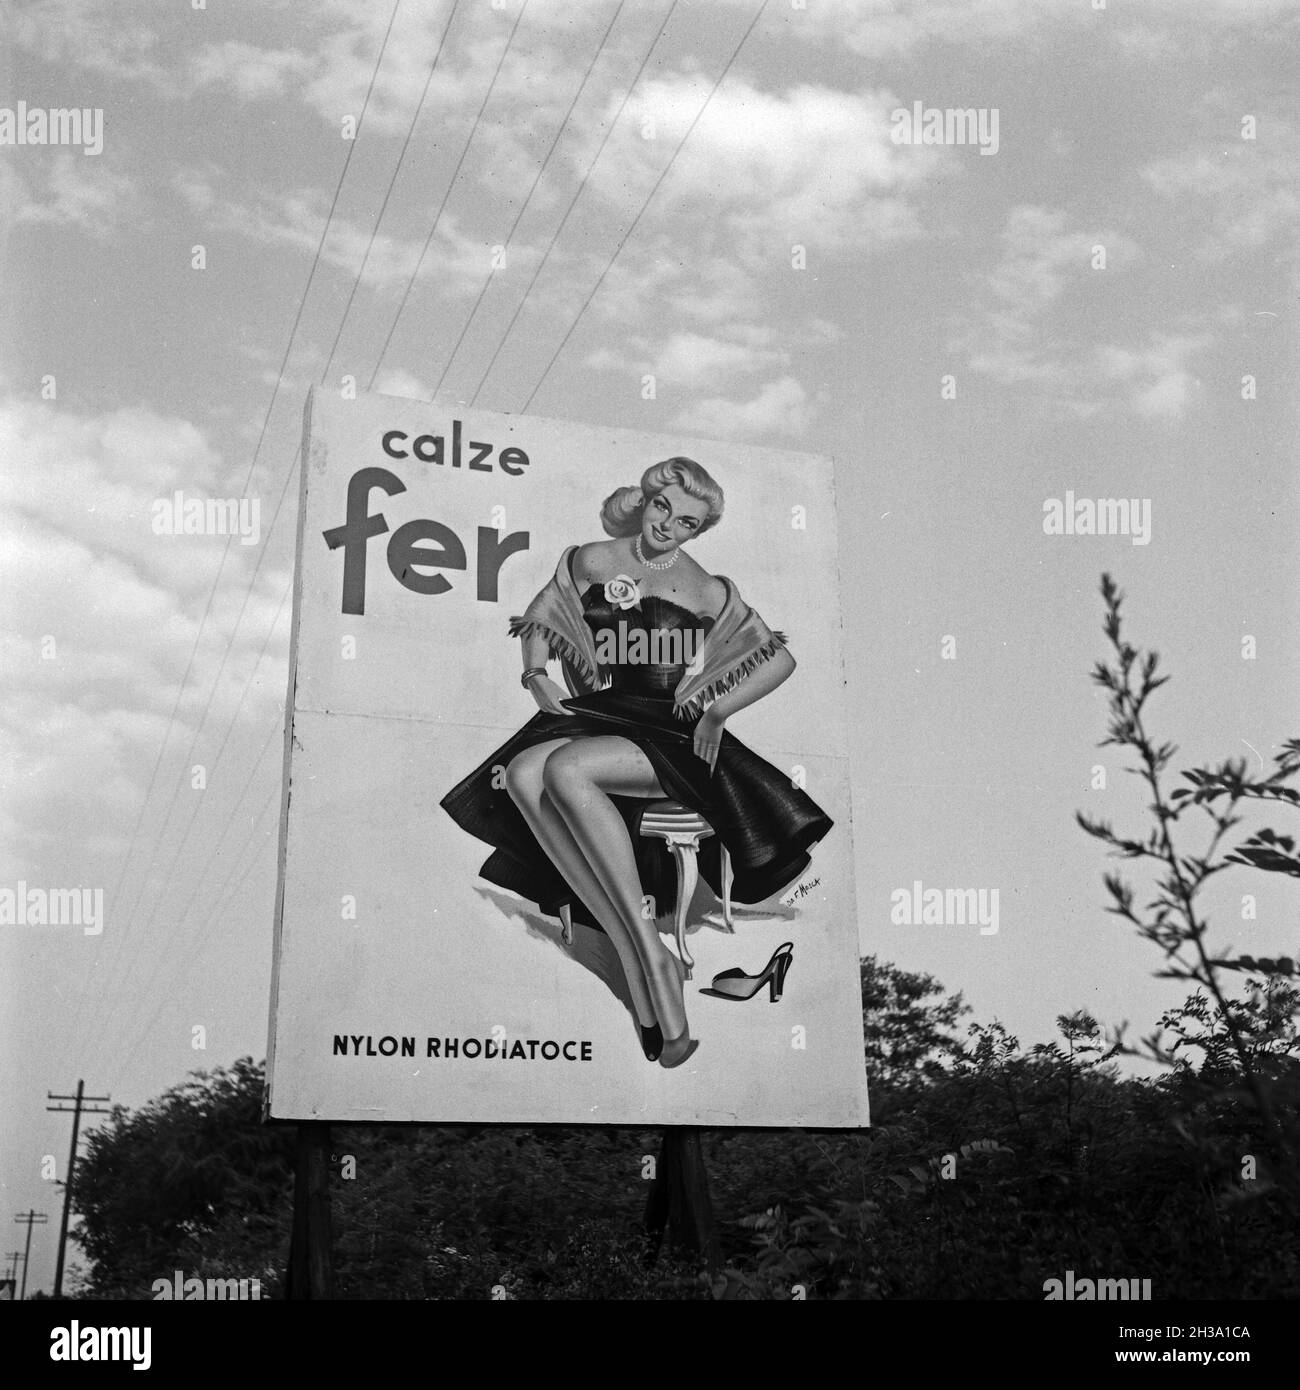 Werbeplakat für Nylonstrumpfhosen an der Autostrada von Mailand nach Navarra, Italien 1950er Jahre. Mostra pubblicitaria calze in nylon all'autostrada tra Milano e Navarra, Italia anni '50. Foto Stock